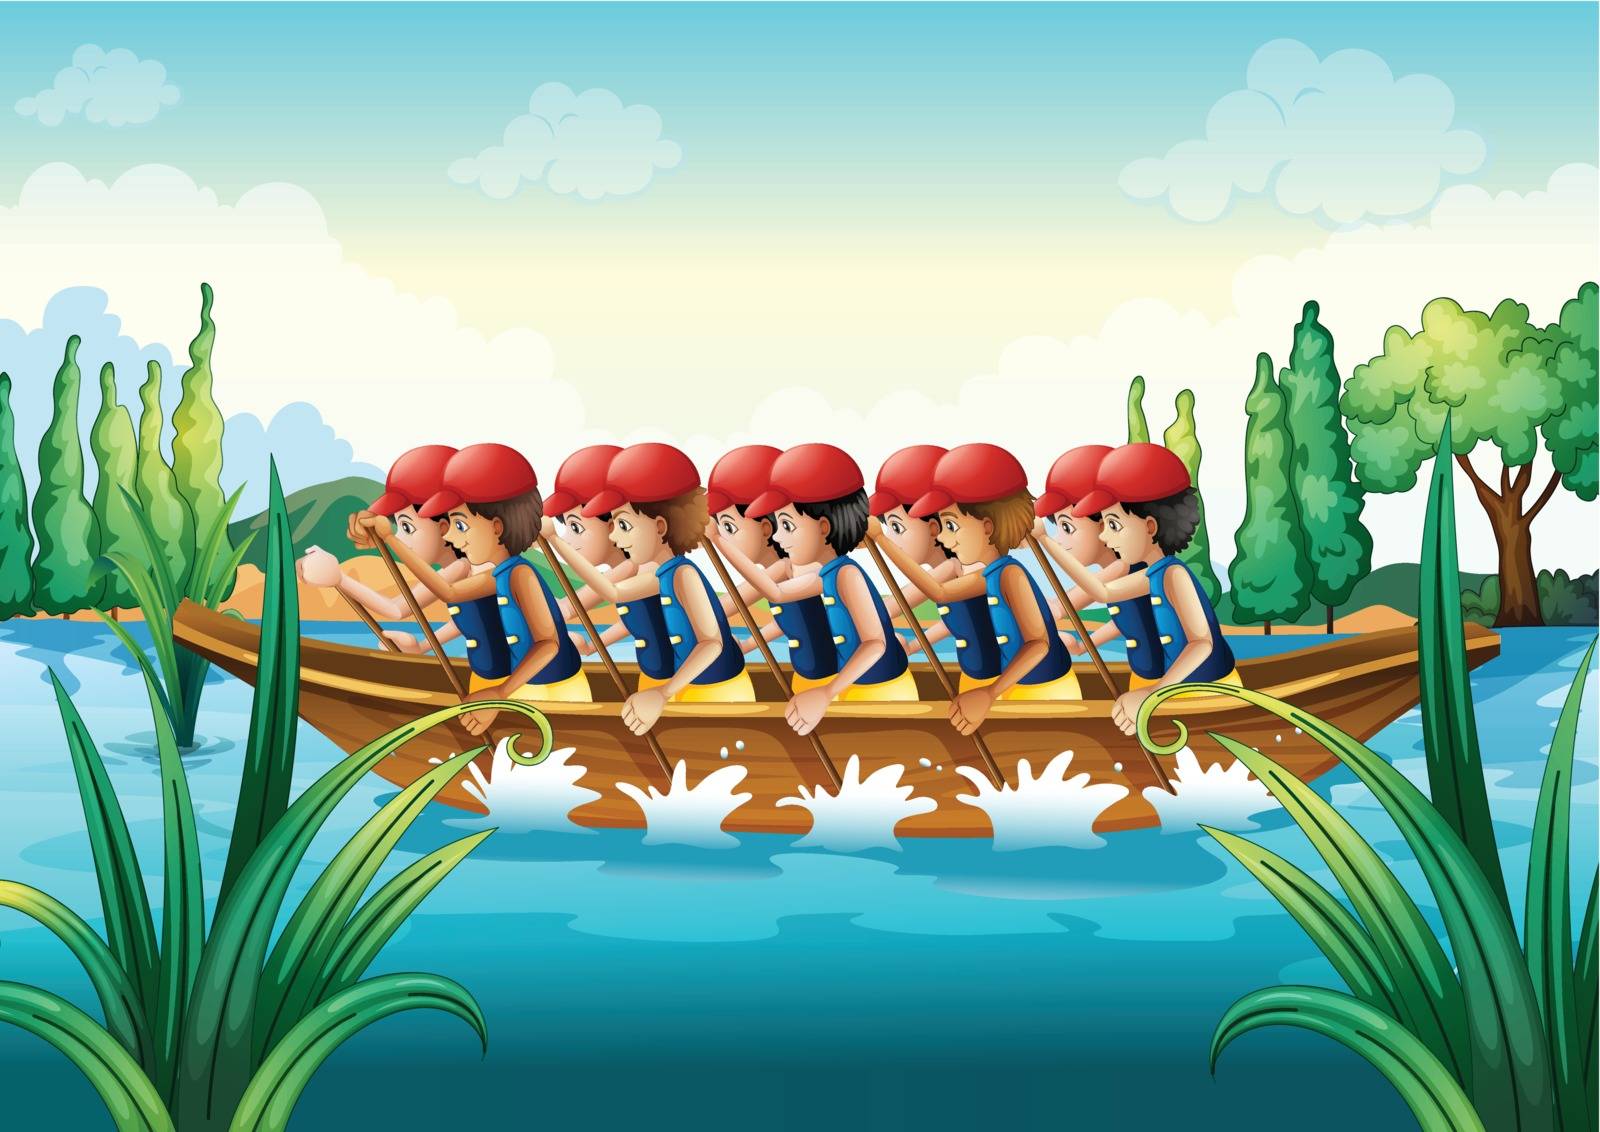 Illustration of a group of men boating